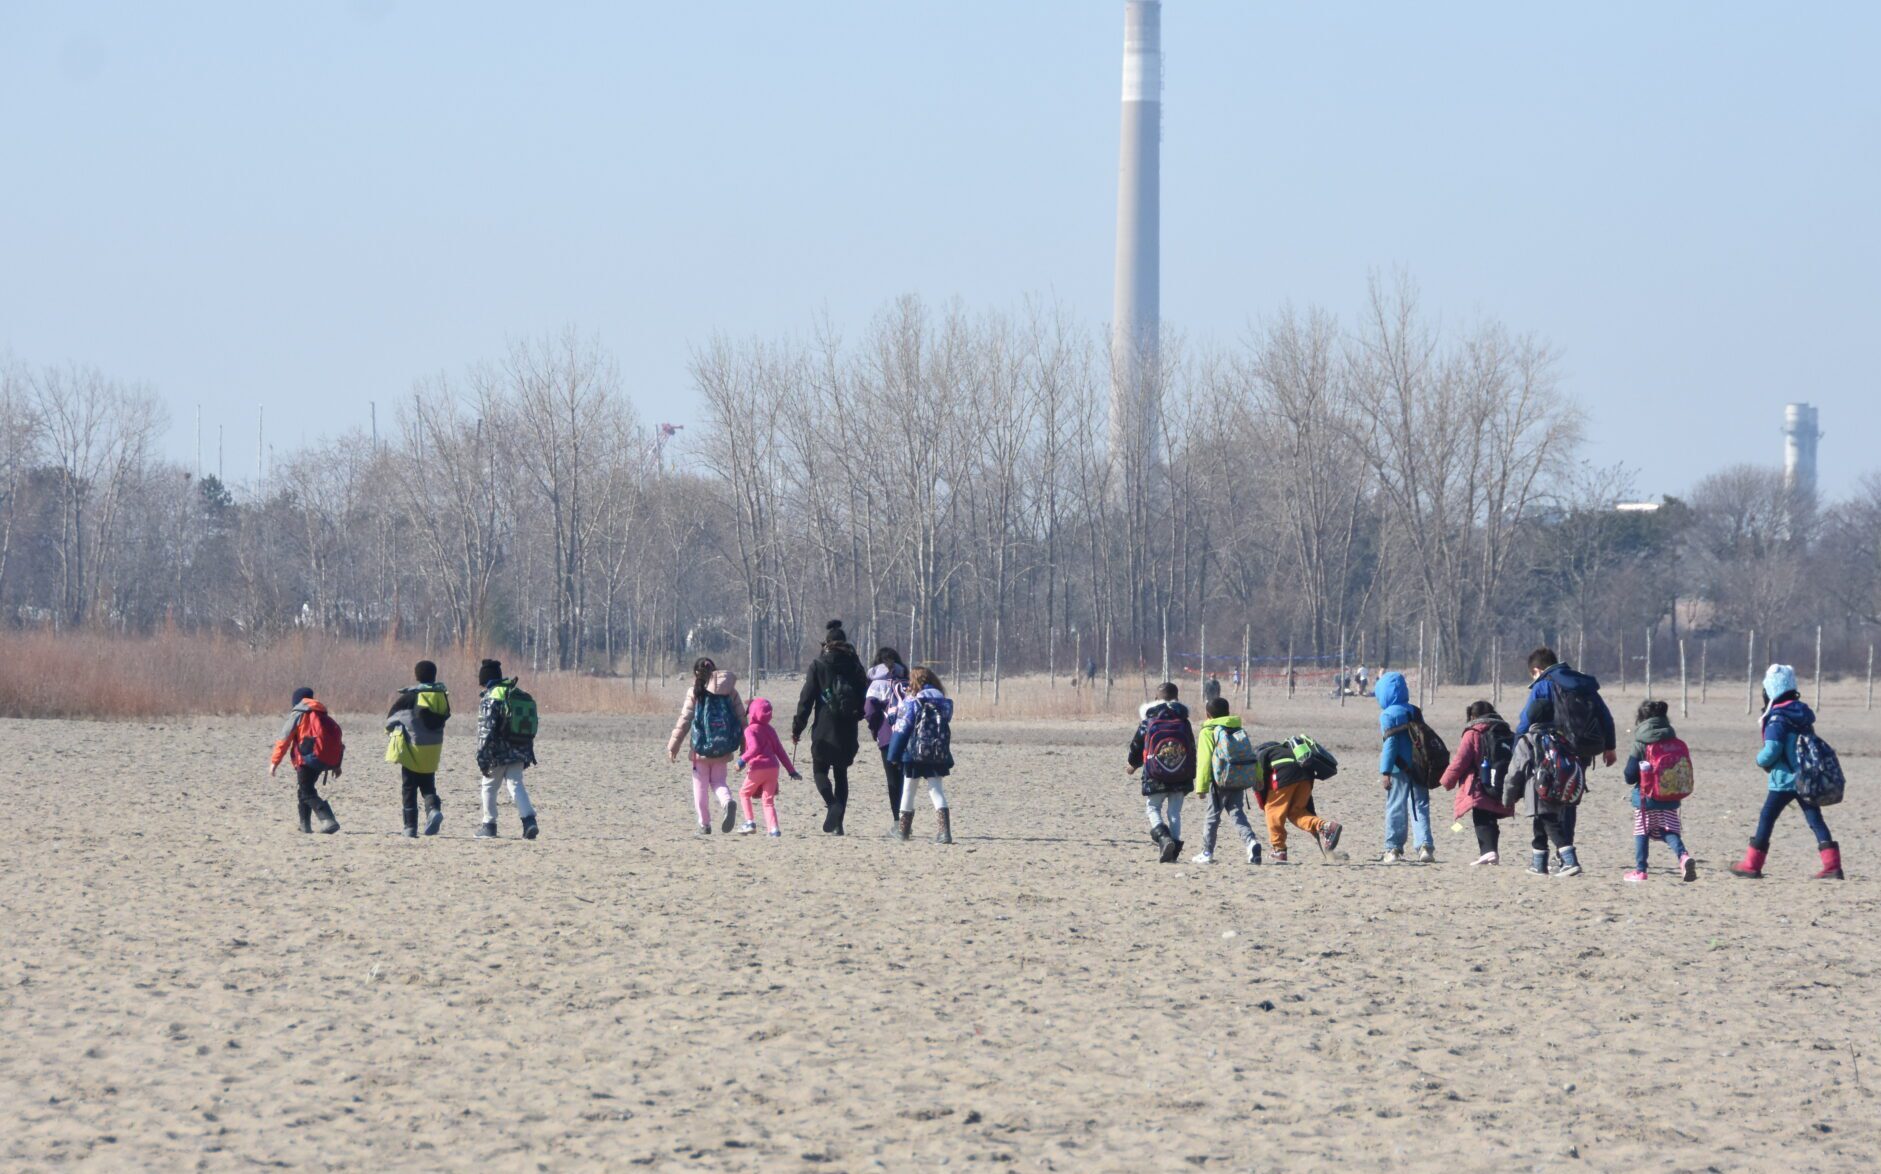 Kids walk in a single file along the beach